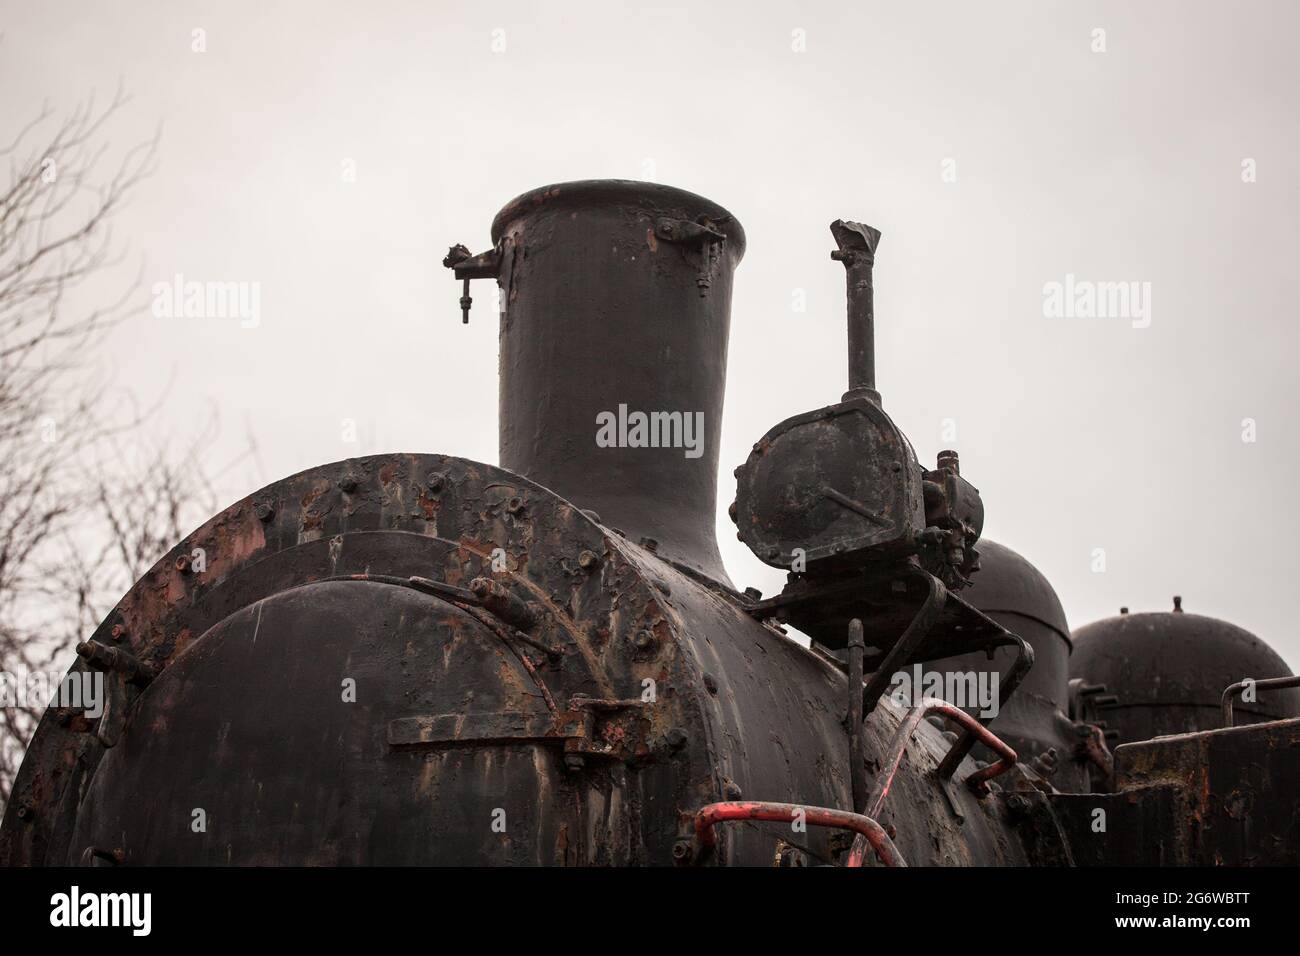 Immagine di uno zoom su una locomotiva a vapore con un fuoco sul suo camino, su una locomotiva a vapore nera. Foto Stock